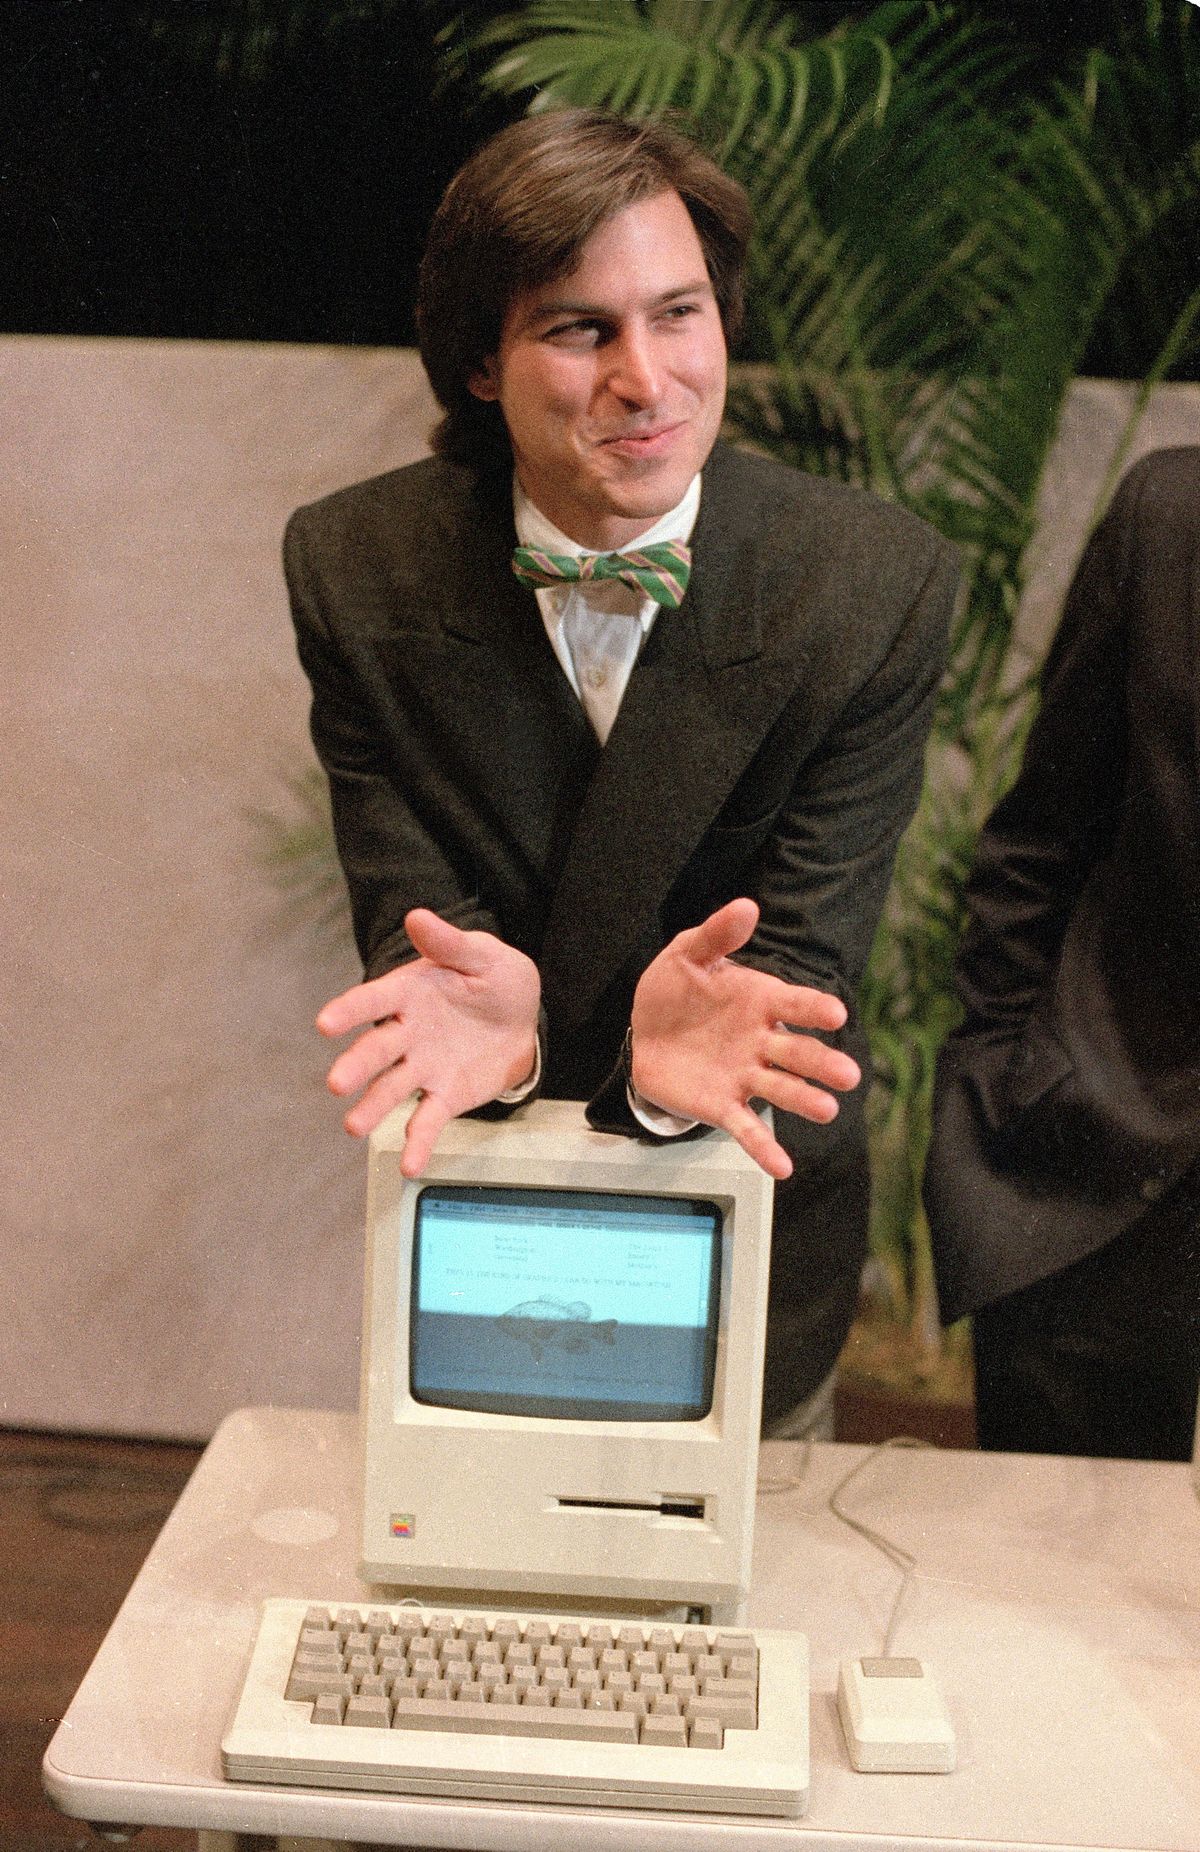 Ettevõtte Apple Computer, Inc. (nüüdne Apple Inc.) juhatuse esimees, Steve Jobs, nõjatub uuele Macintoshile. 1984 